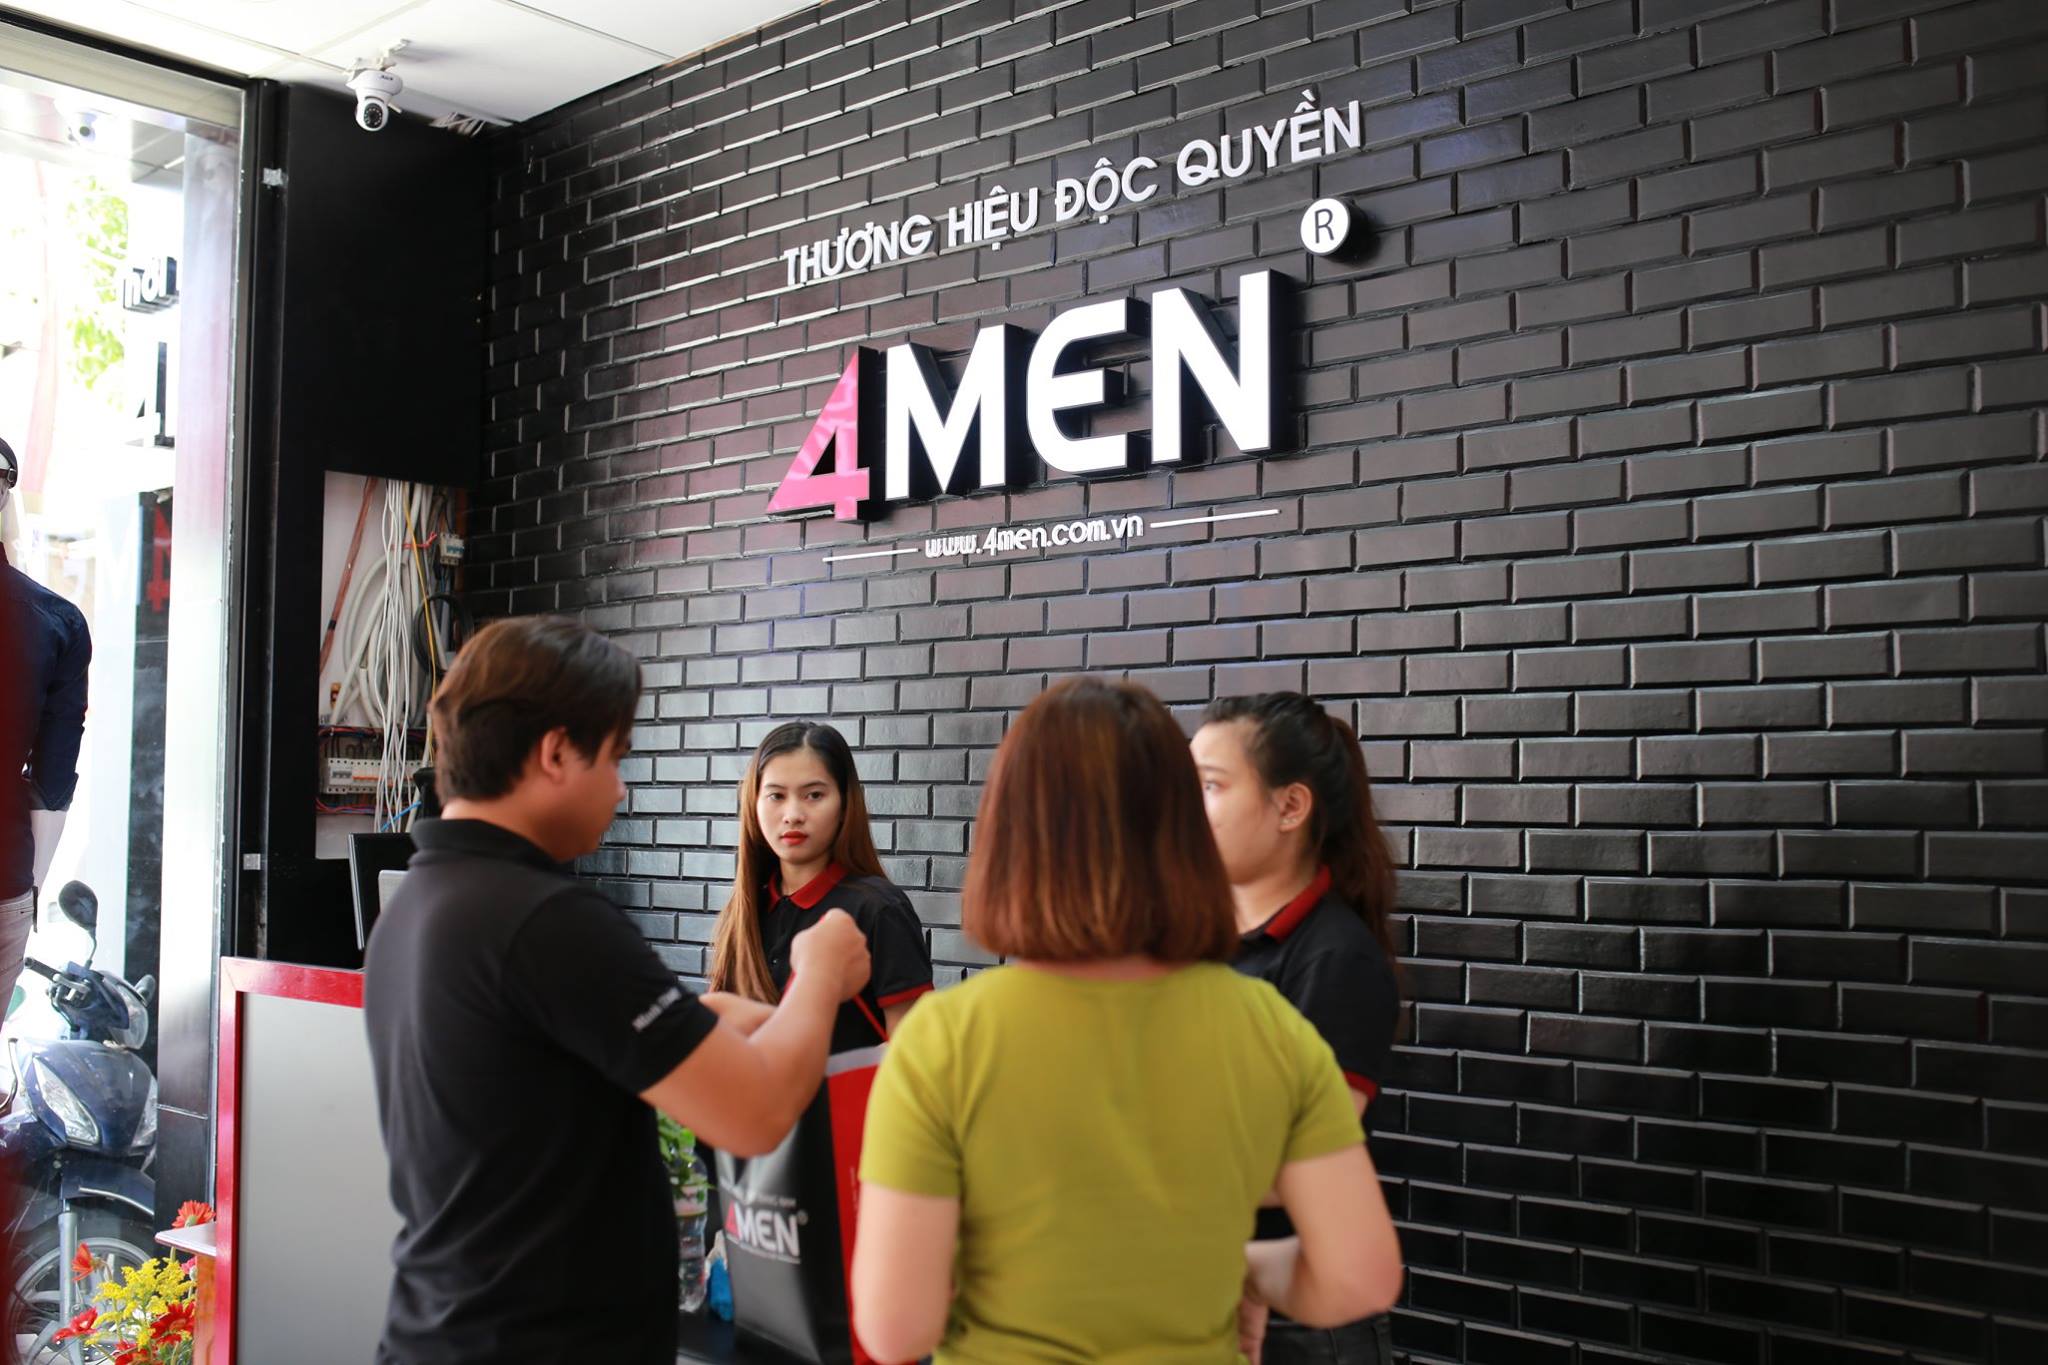 Top 10 shop thời trang nam đẹp và nổi tiếng nhất ở TPHCM -  4men shop